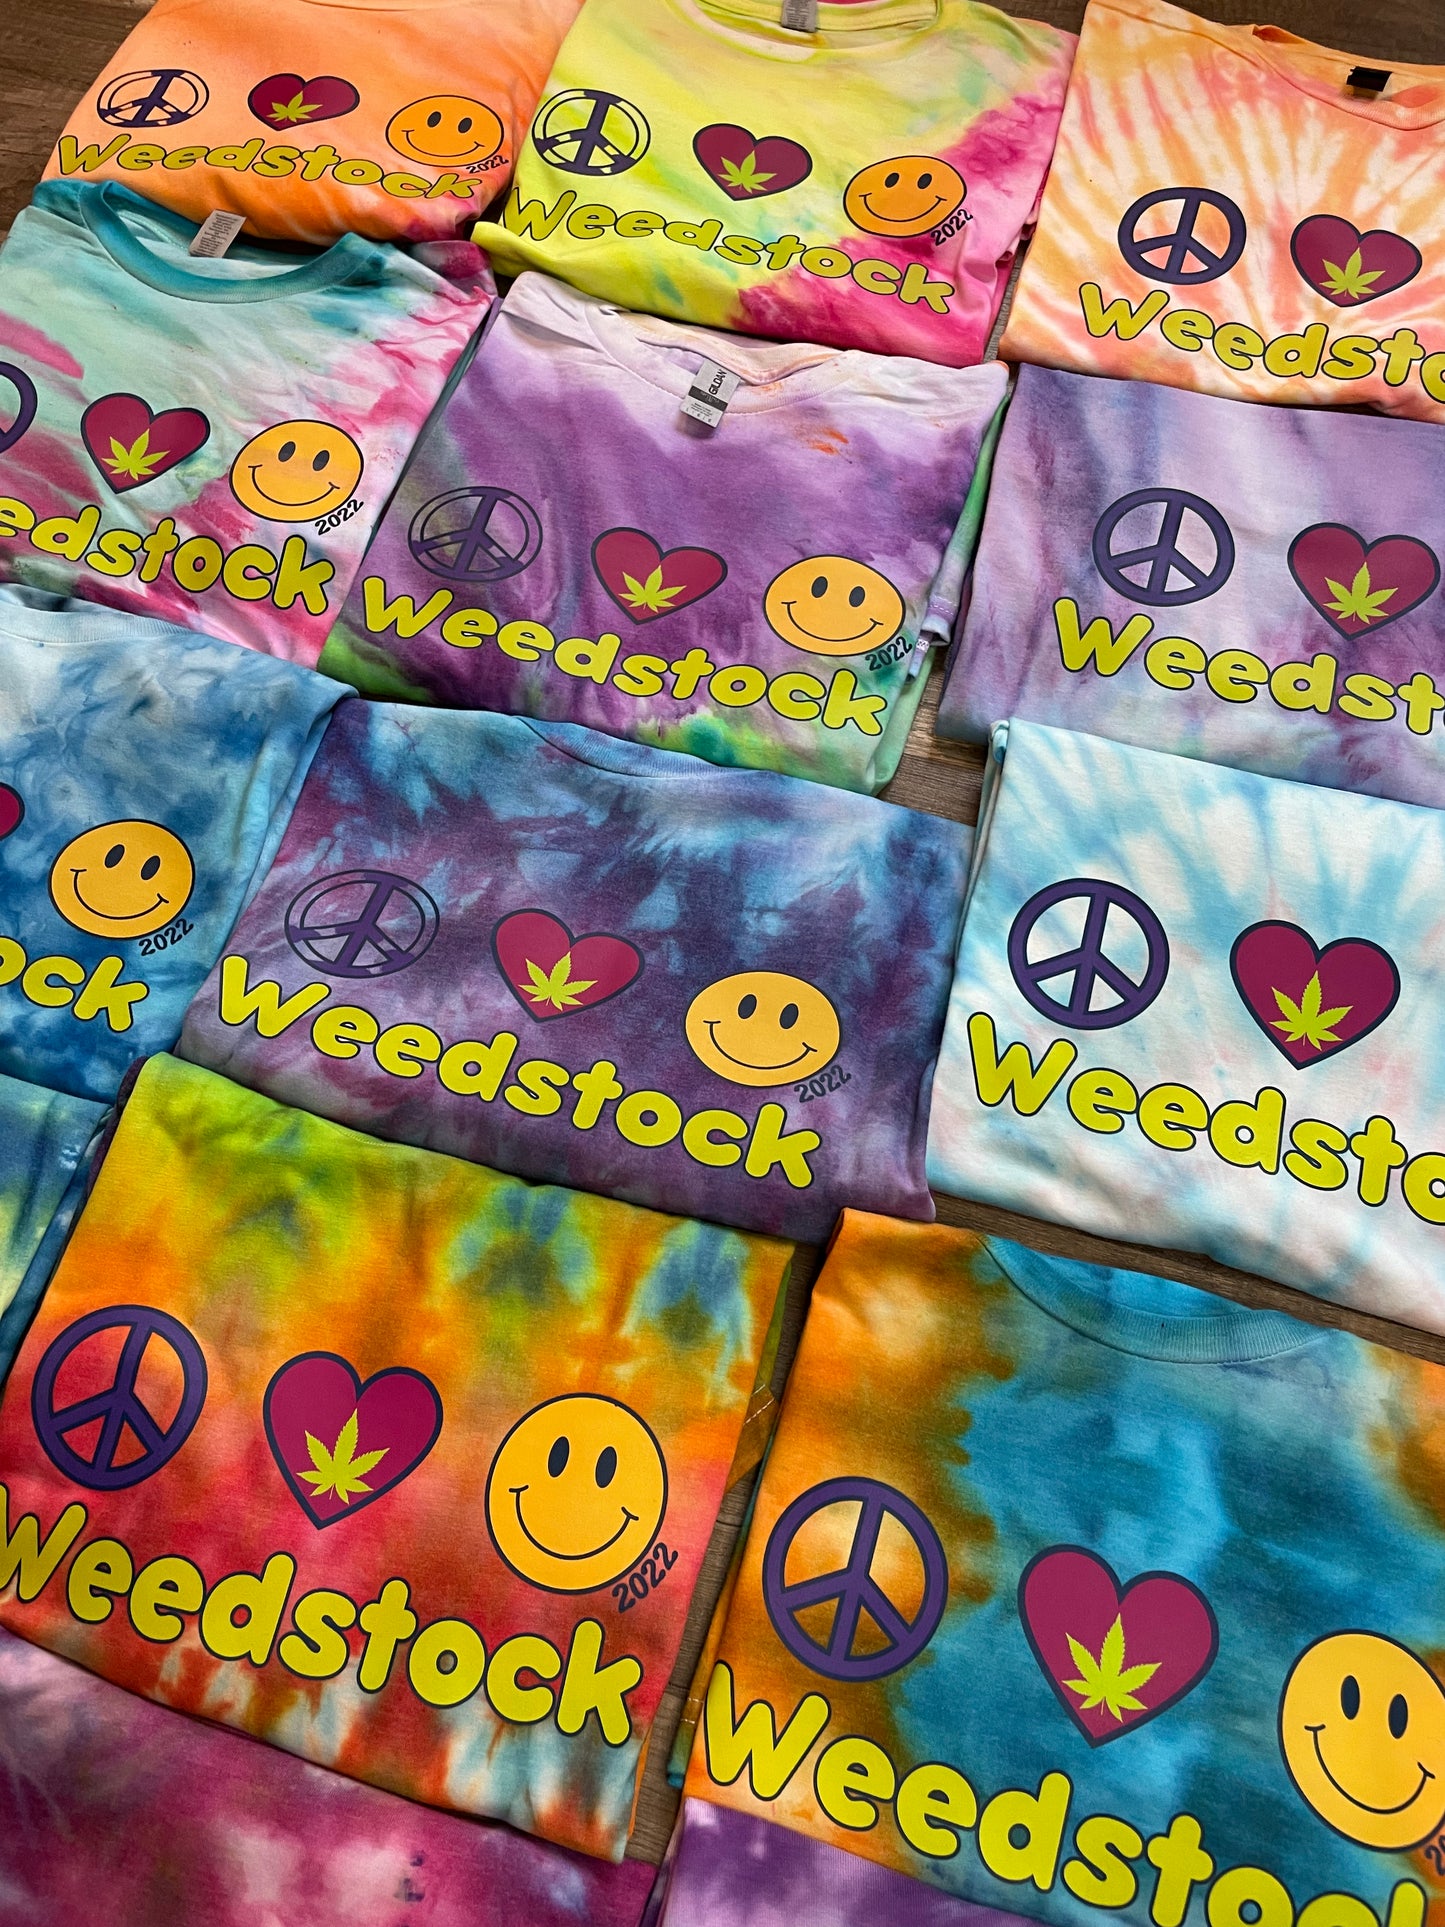 WeedStock 2022 festival tee